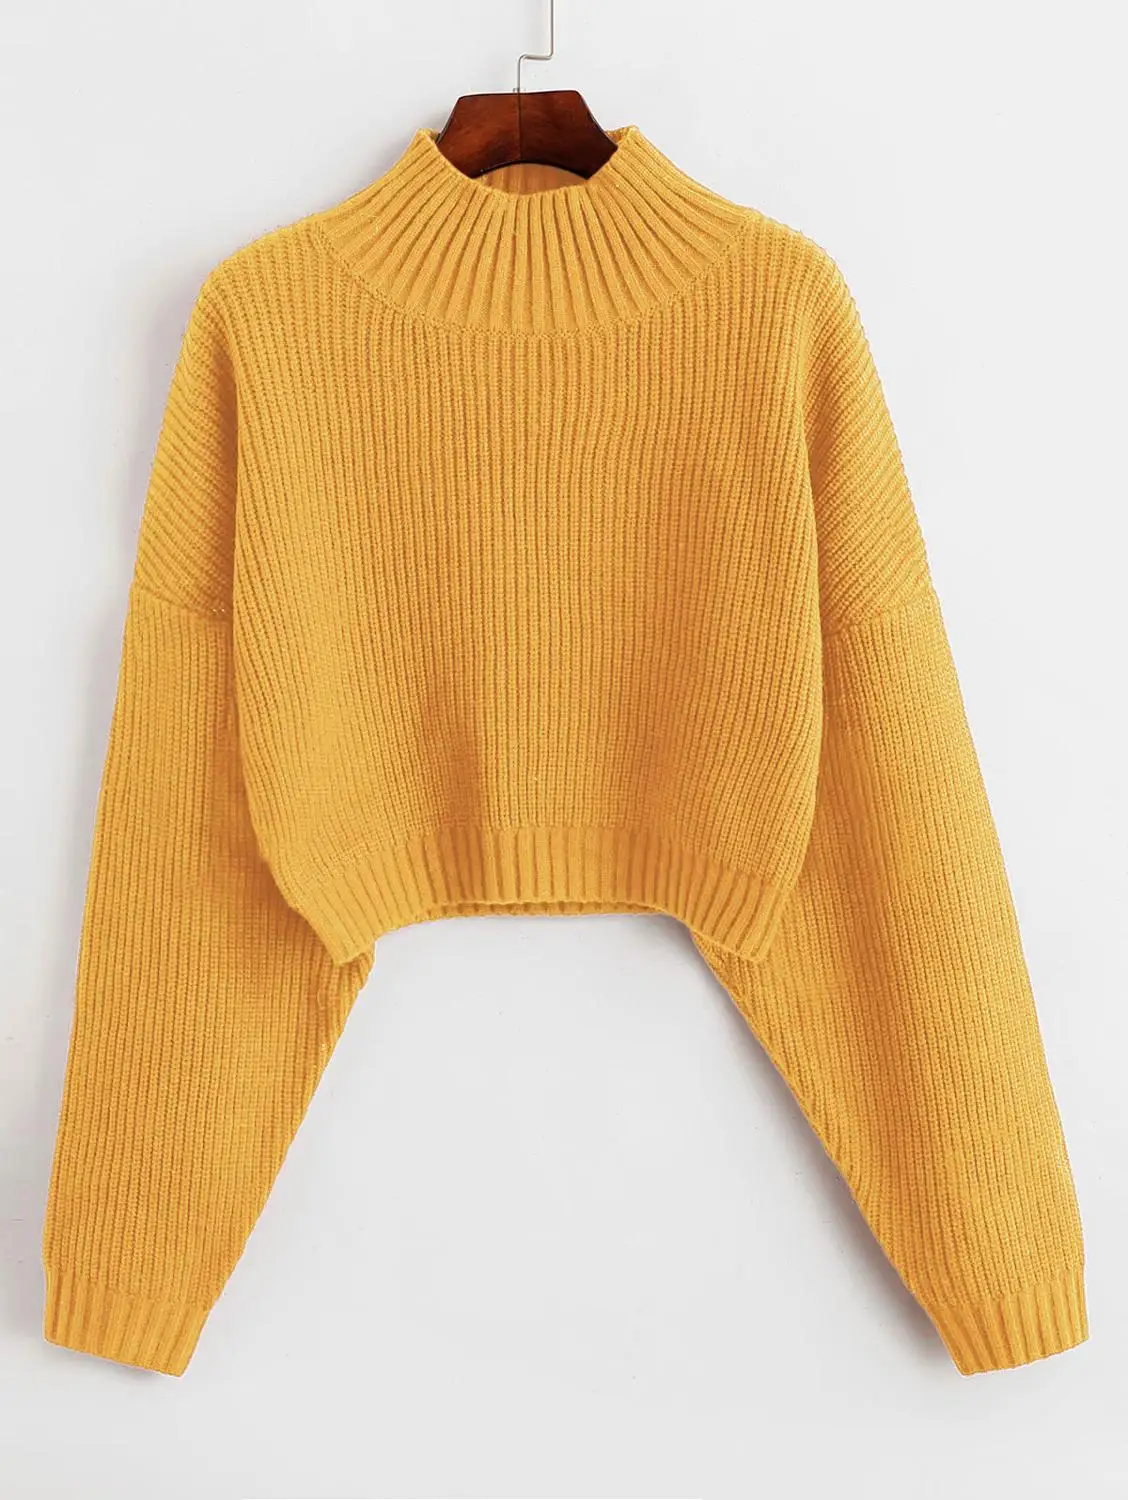 ZAFUL простой свитер с высоким воротом, осенне-зимний однотонный Повседневный женский топ,, пуловер, свитера для женщин - Цвет: Yellow